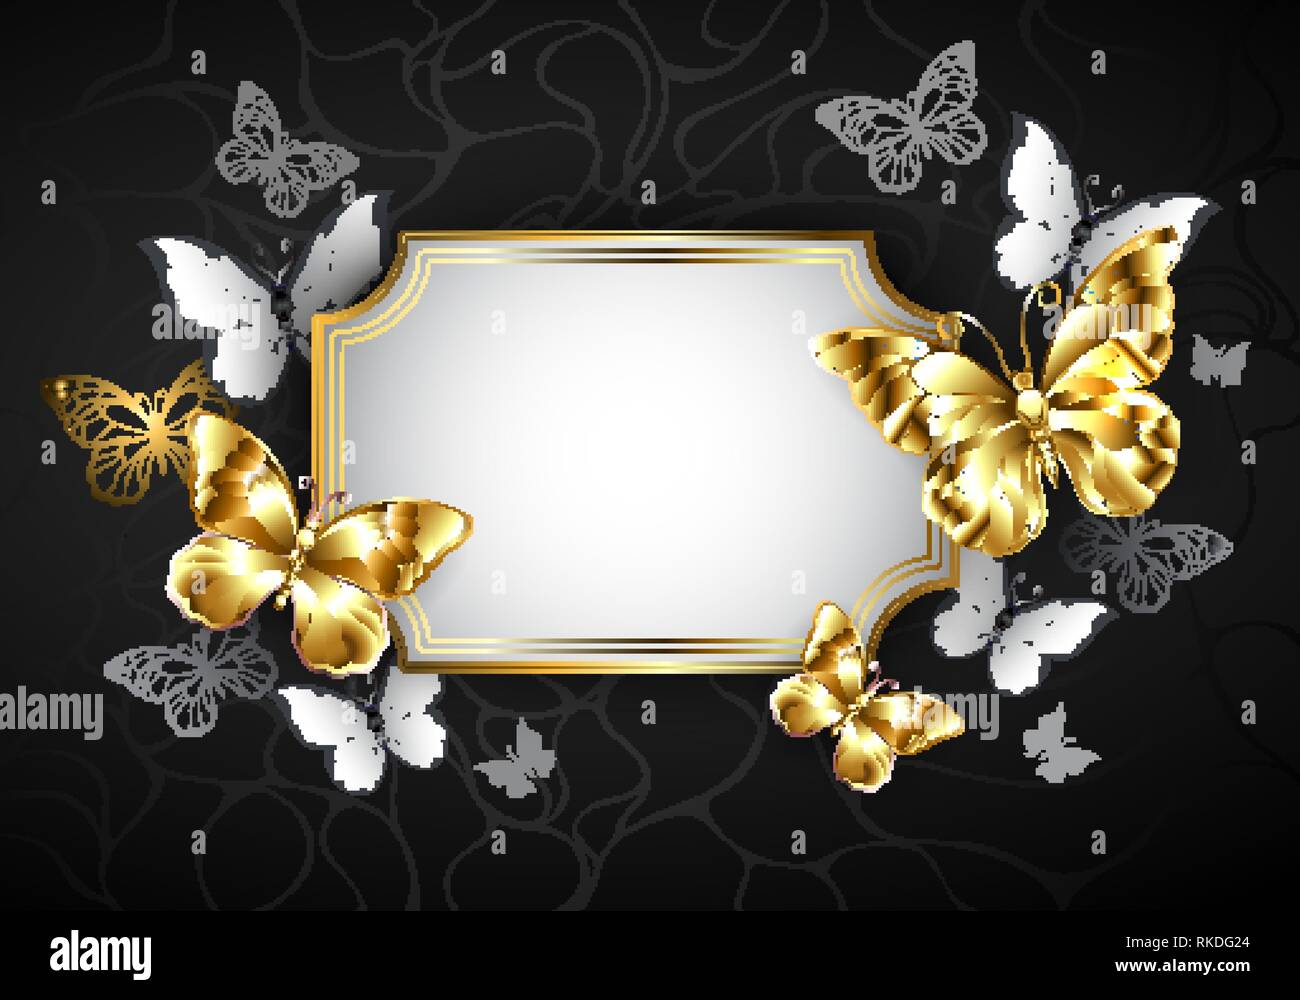 Bannière blanche rectangulaire avec cadre, décoré de papillons bijoux en or sur fond noir. Illustration de Vecteur